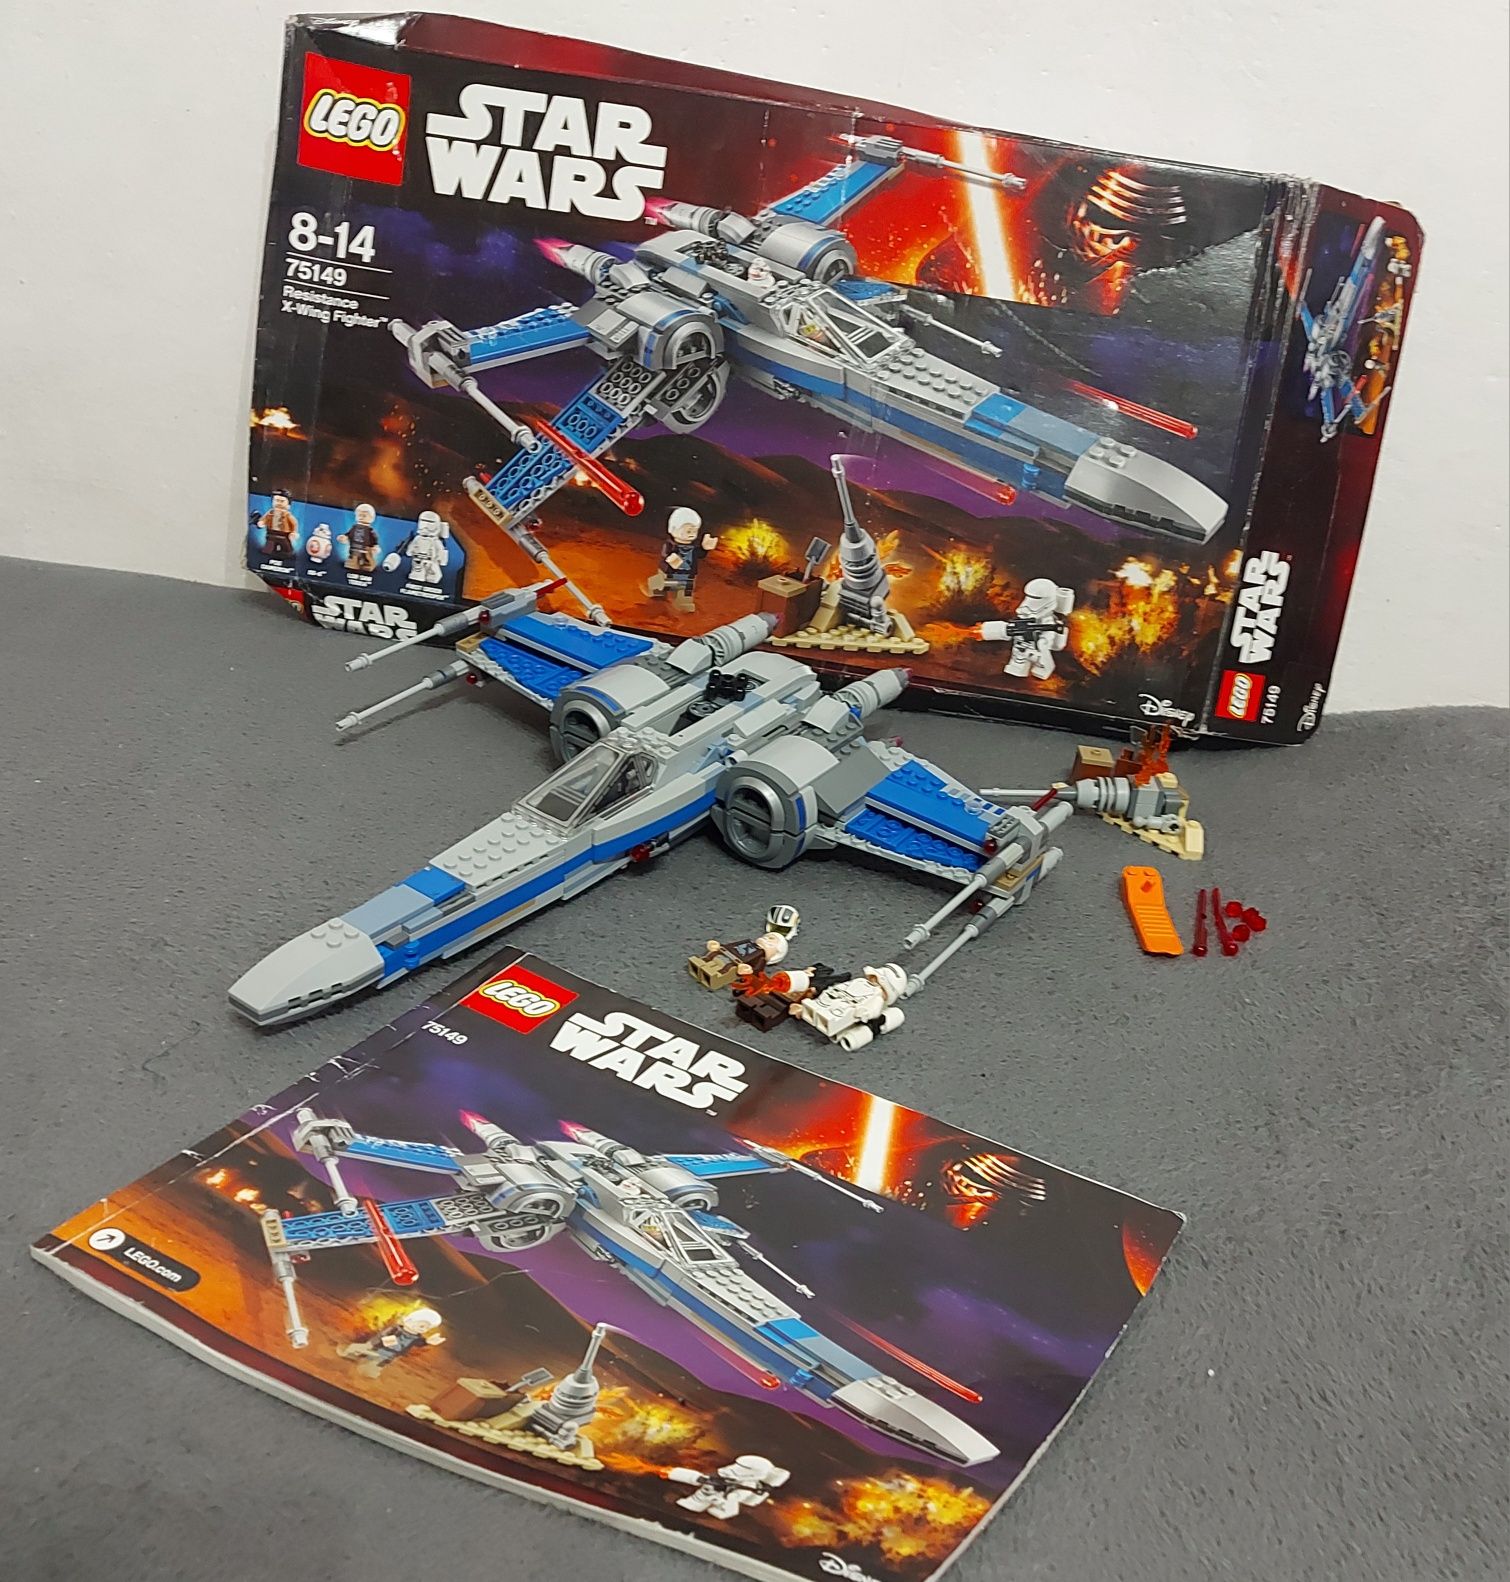 Lego Star Wars 75149